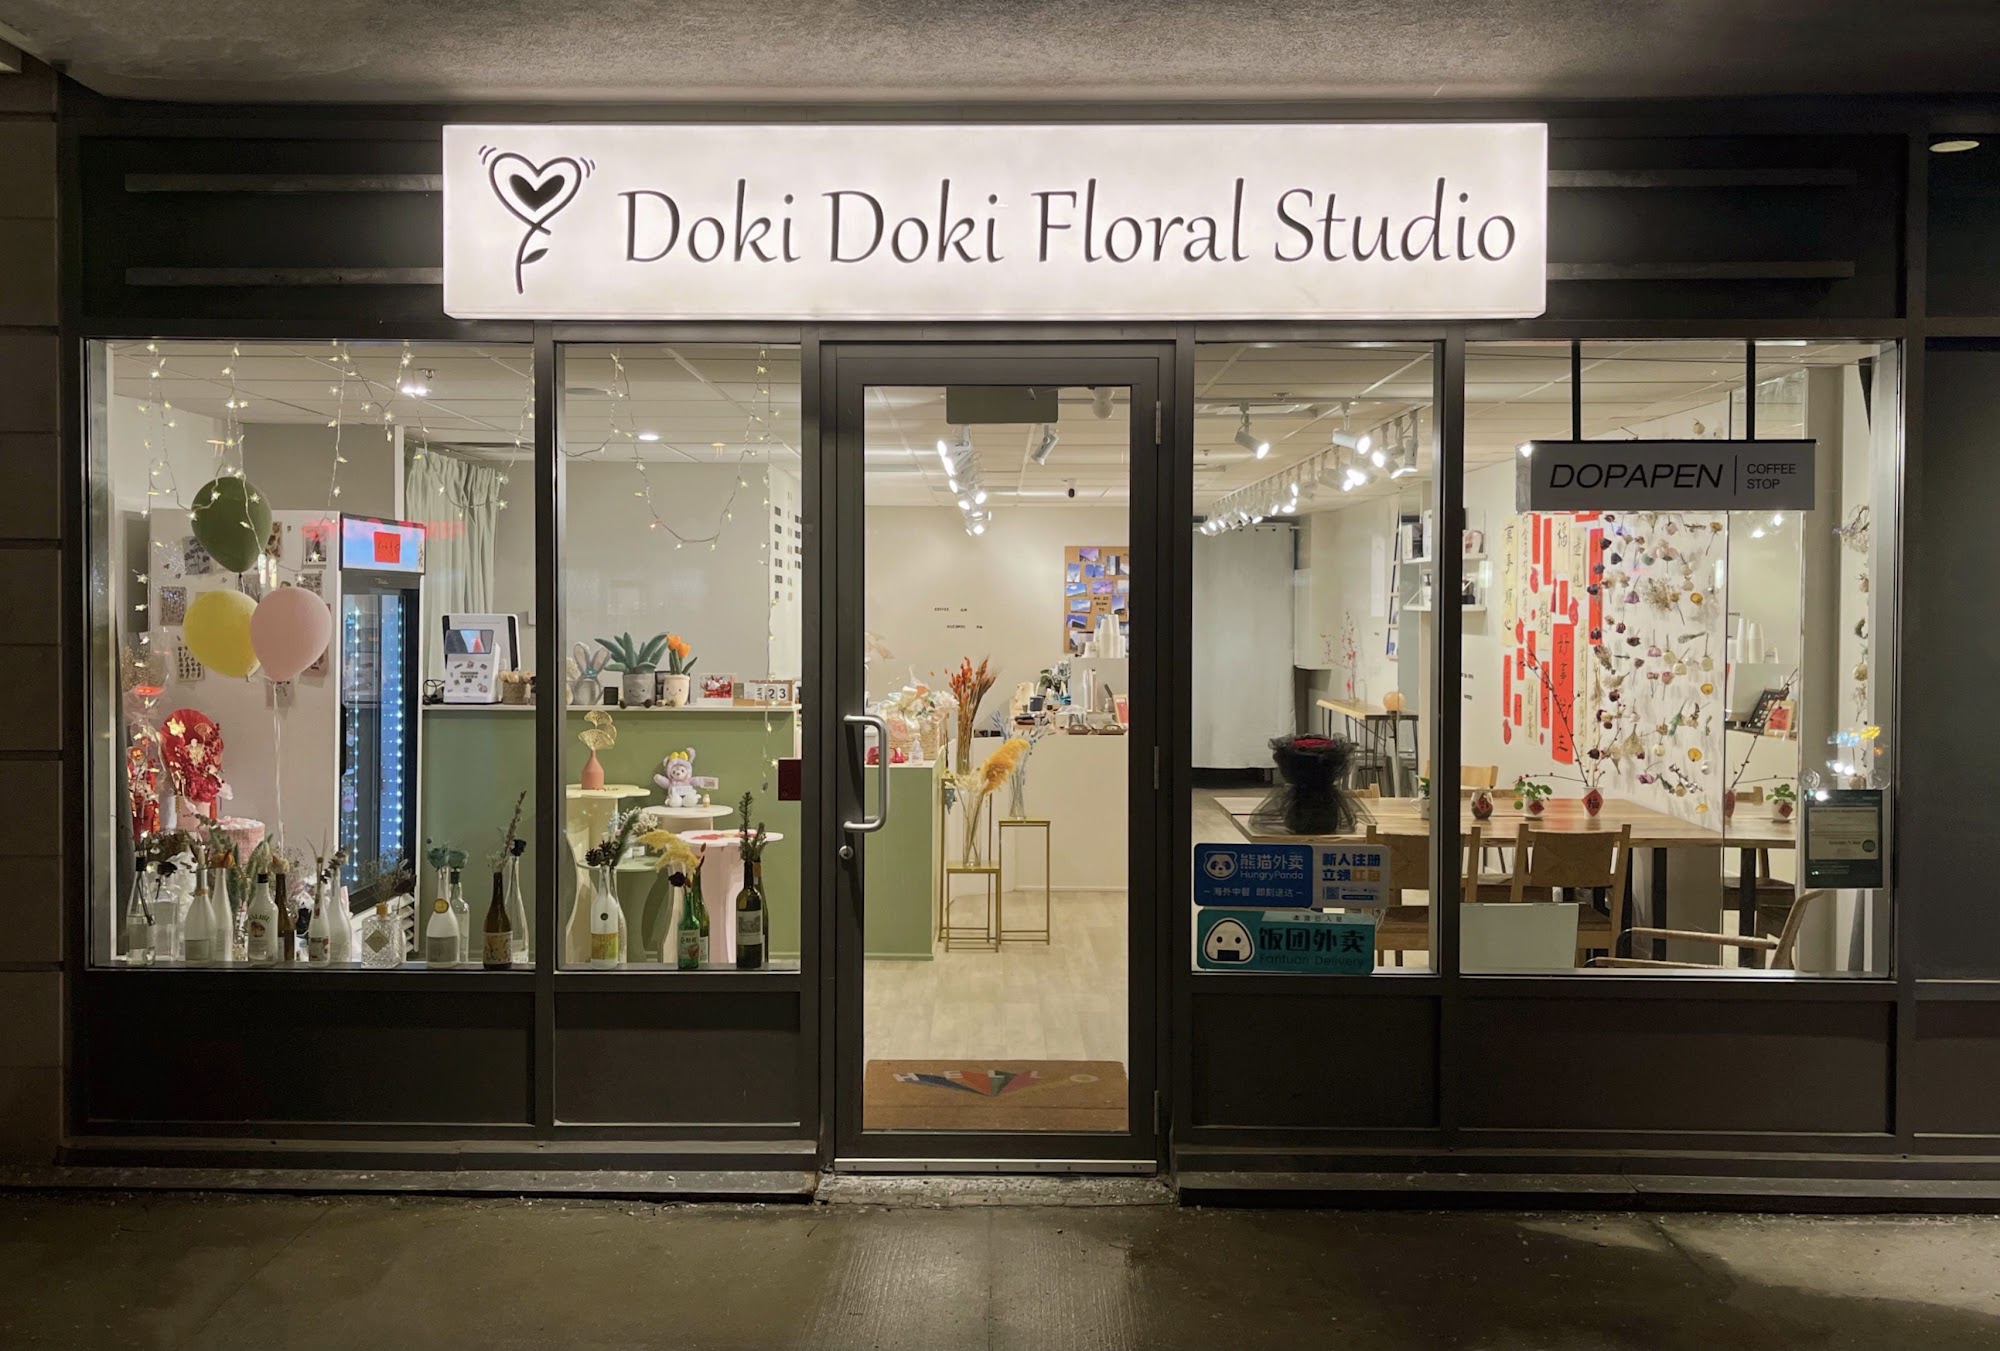 Doki Doki Floral Studio